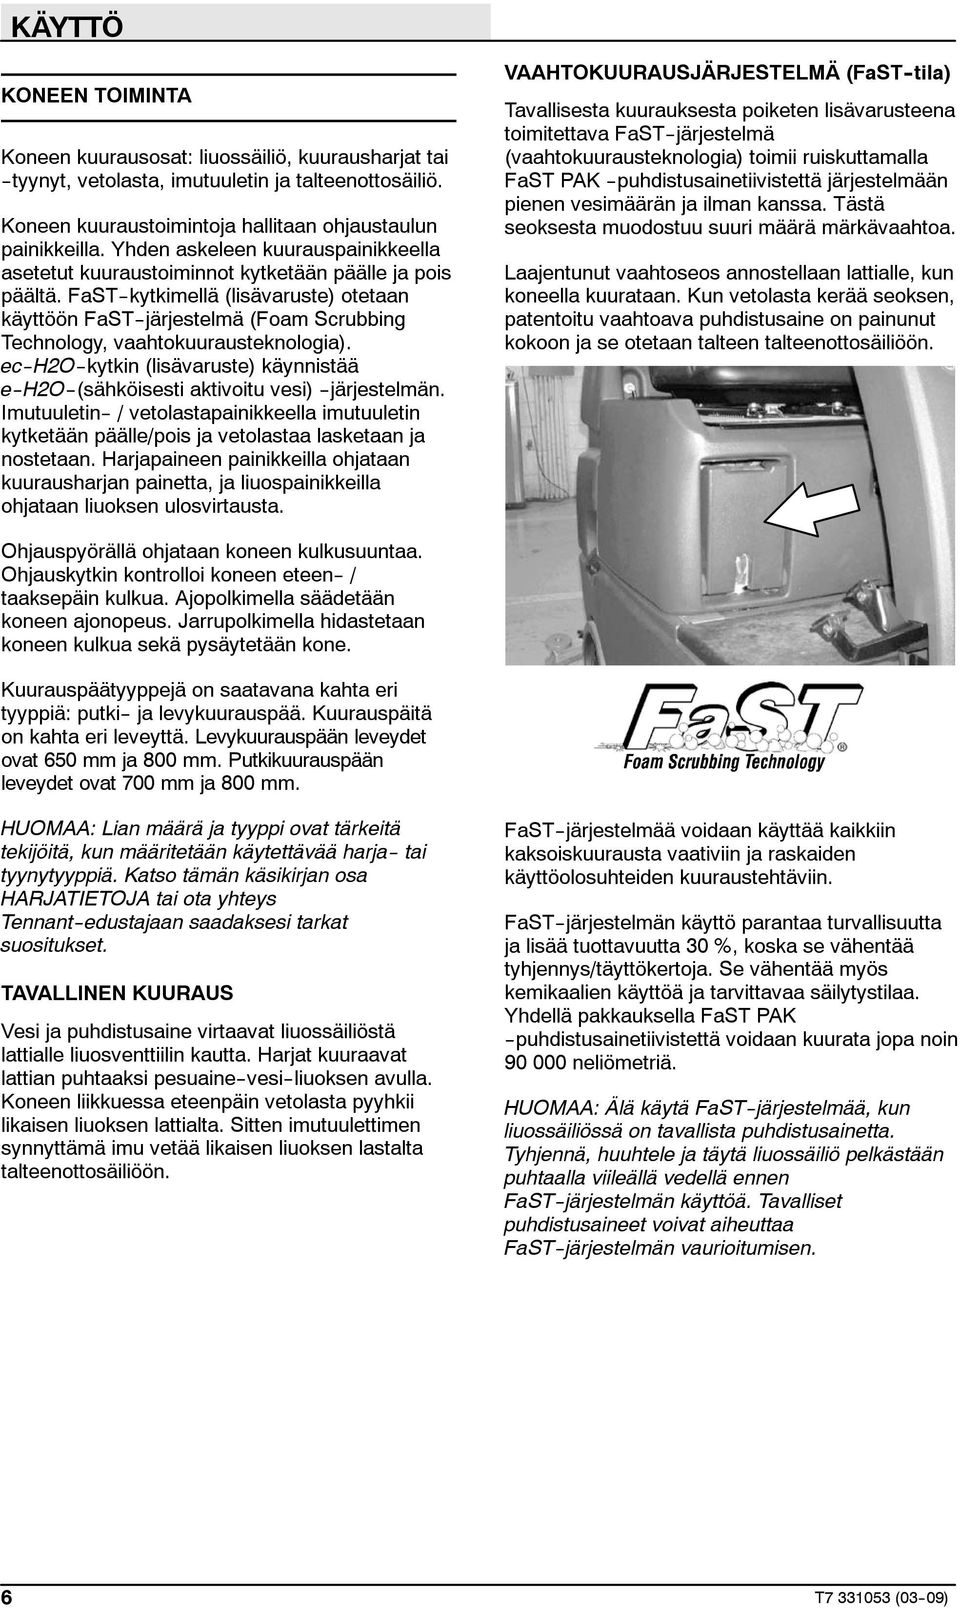 FaST--kytkimellä (lisävaruste) otetaan käyttöön FaST--järjestelmä (Foam Scrubbing Technology, vaahtokuurausteknologia).